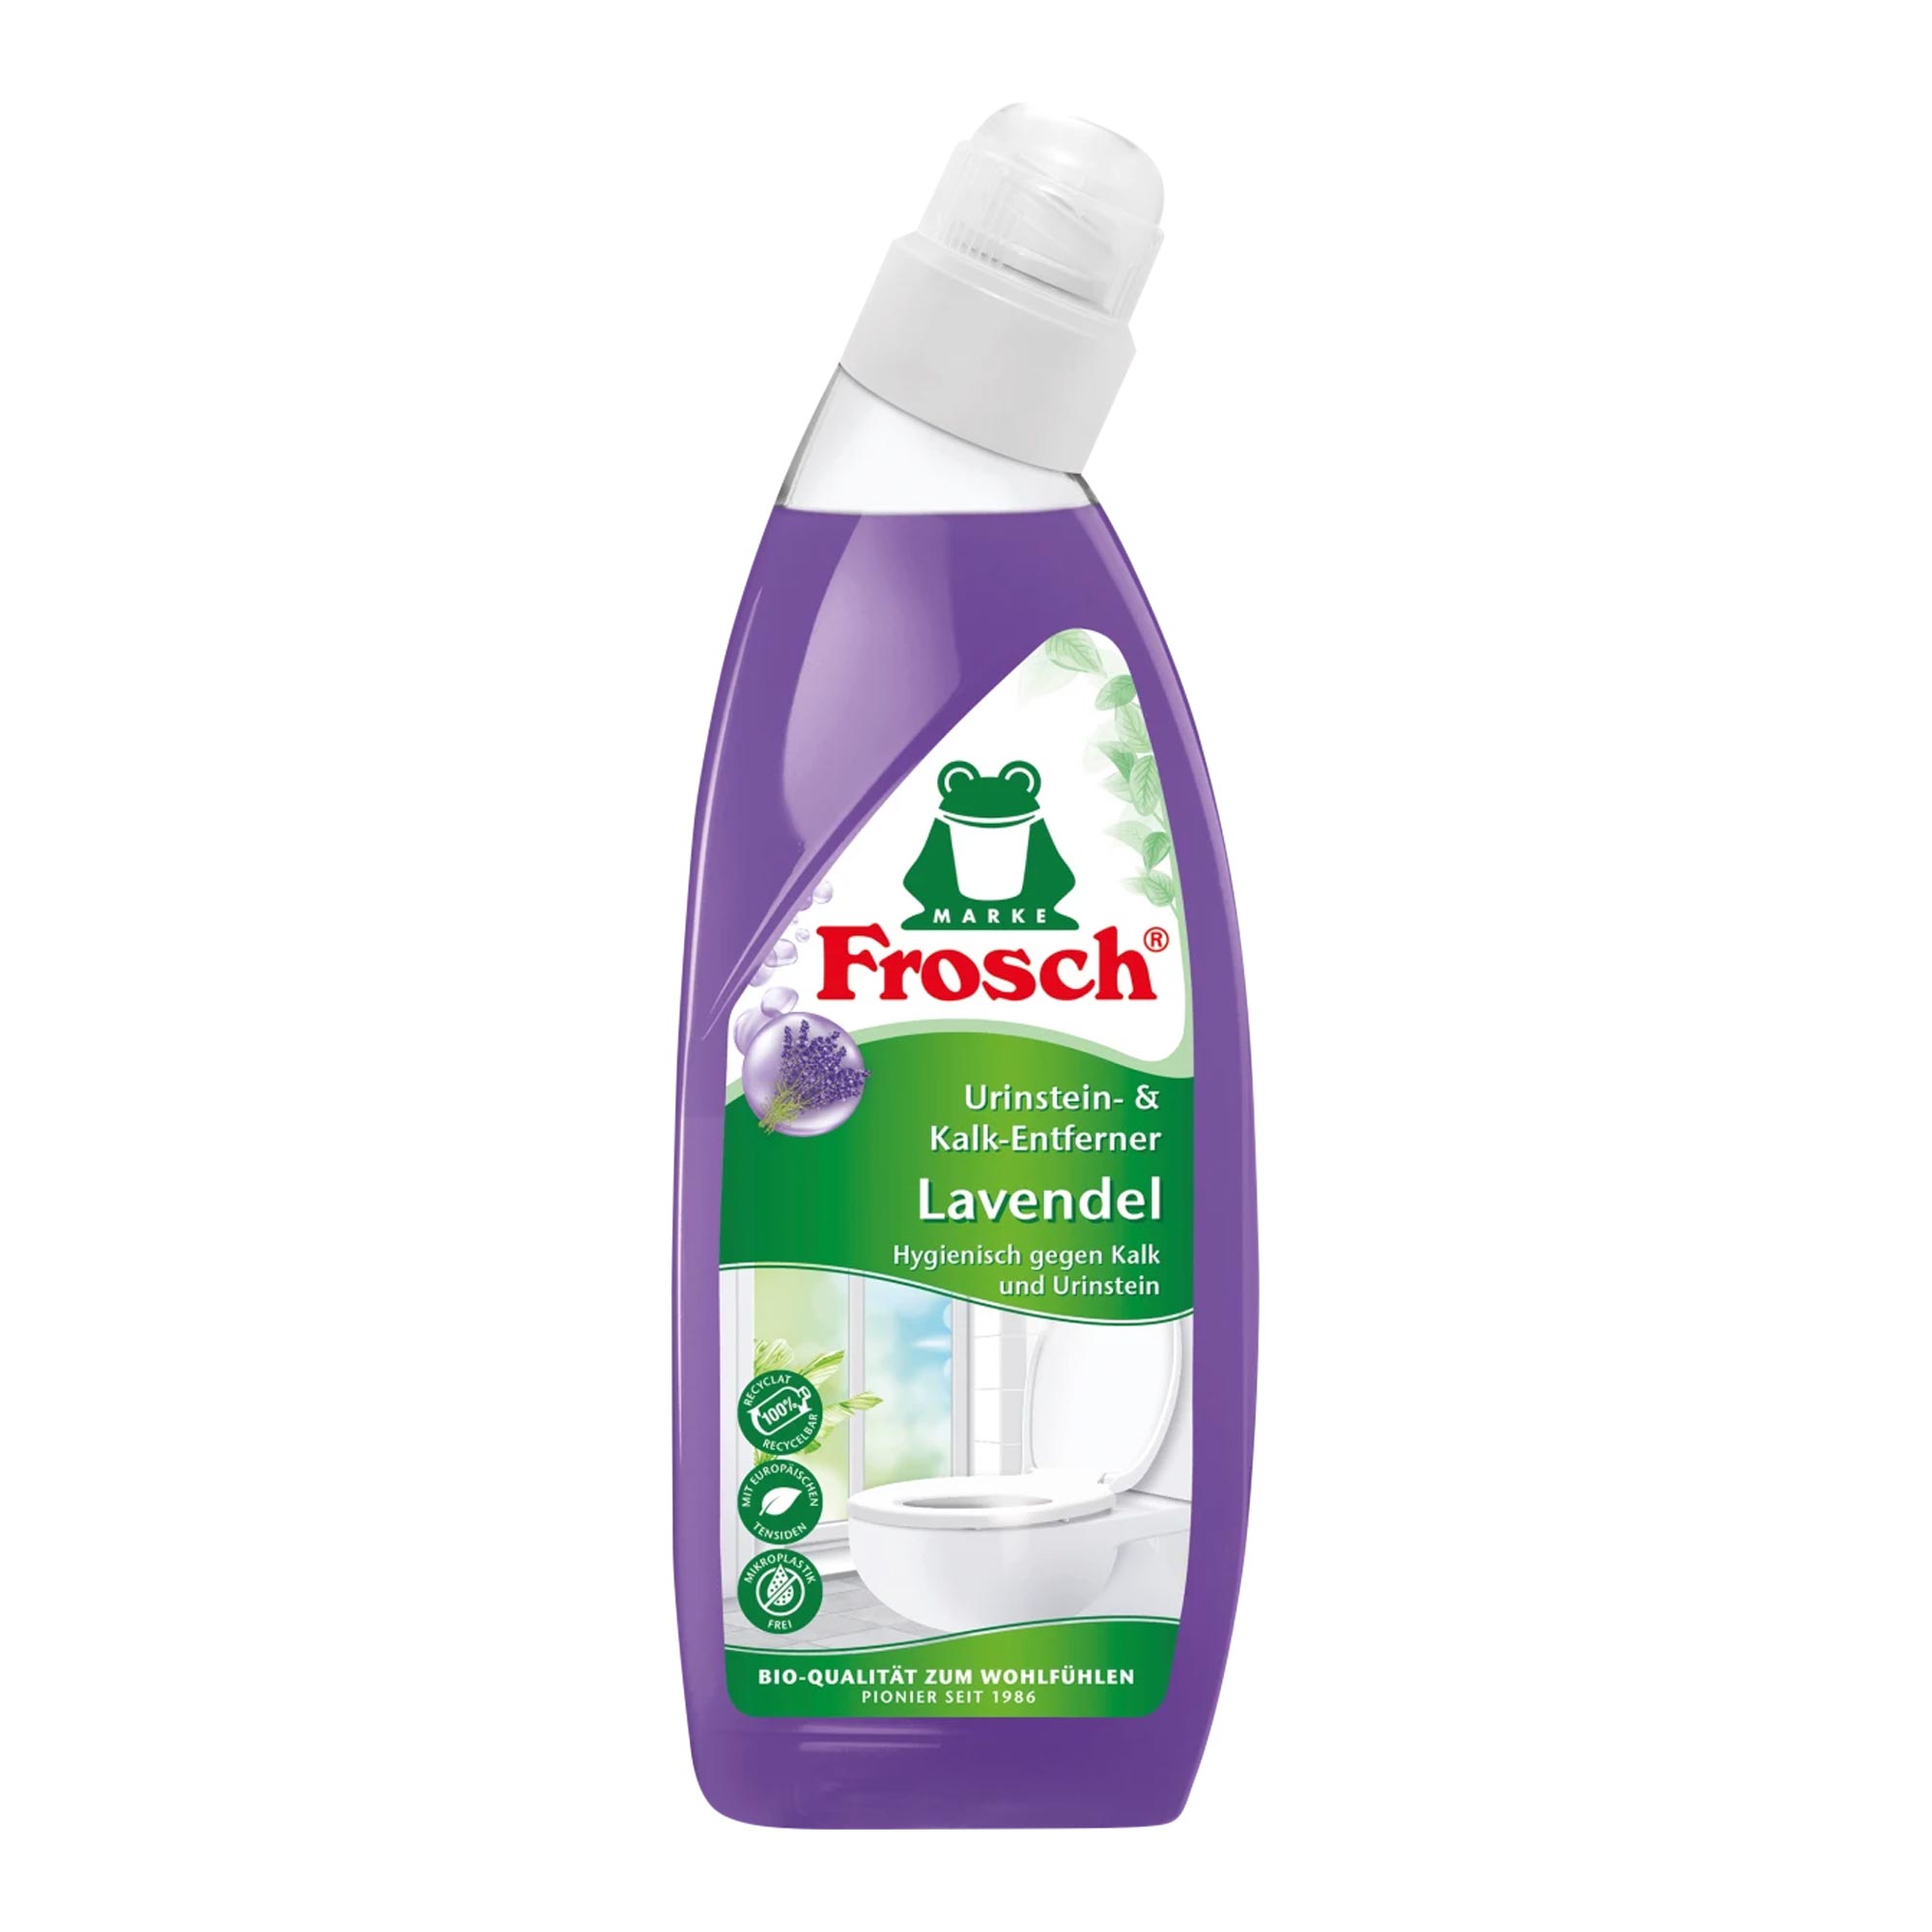 Frosch Urinstein- & Kalkentferner Lavendel WC-Reiniger